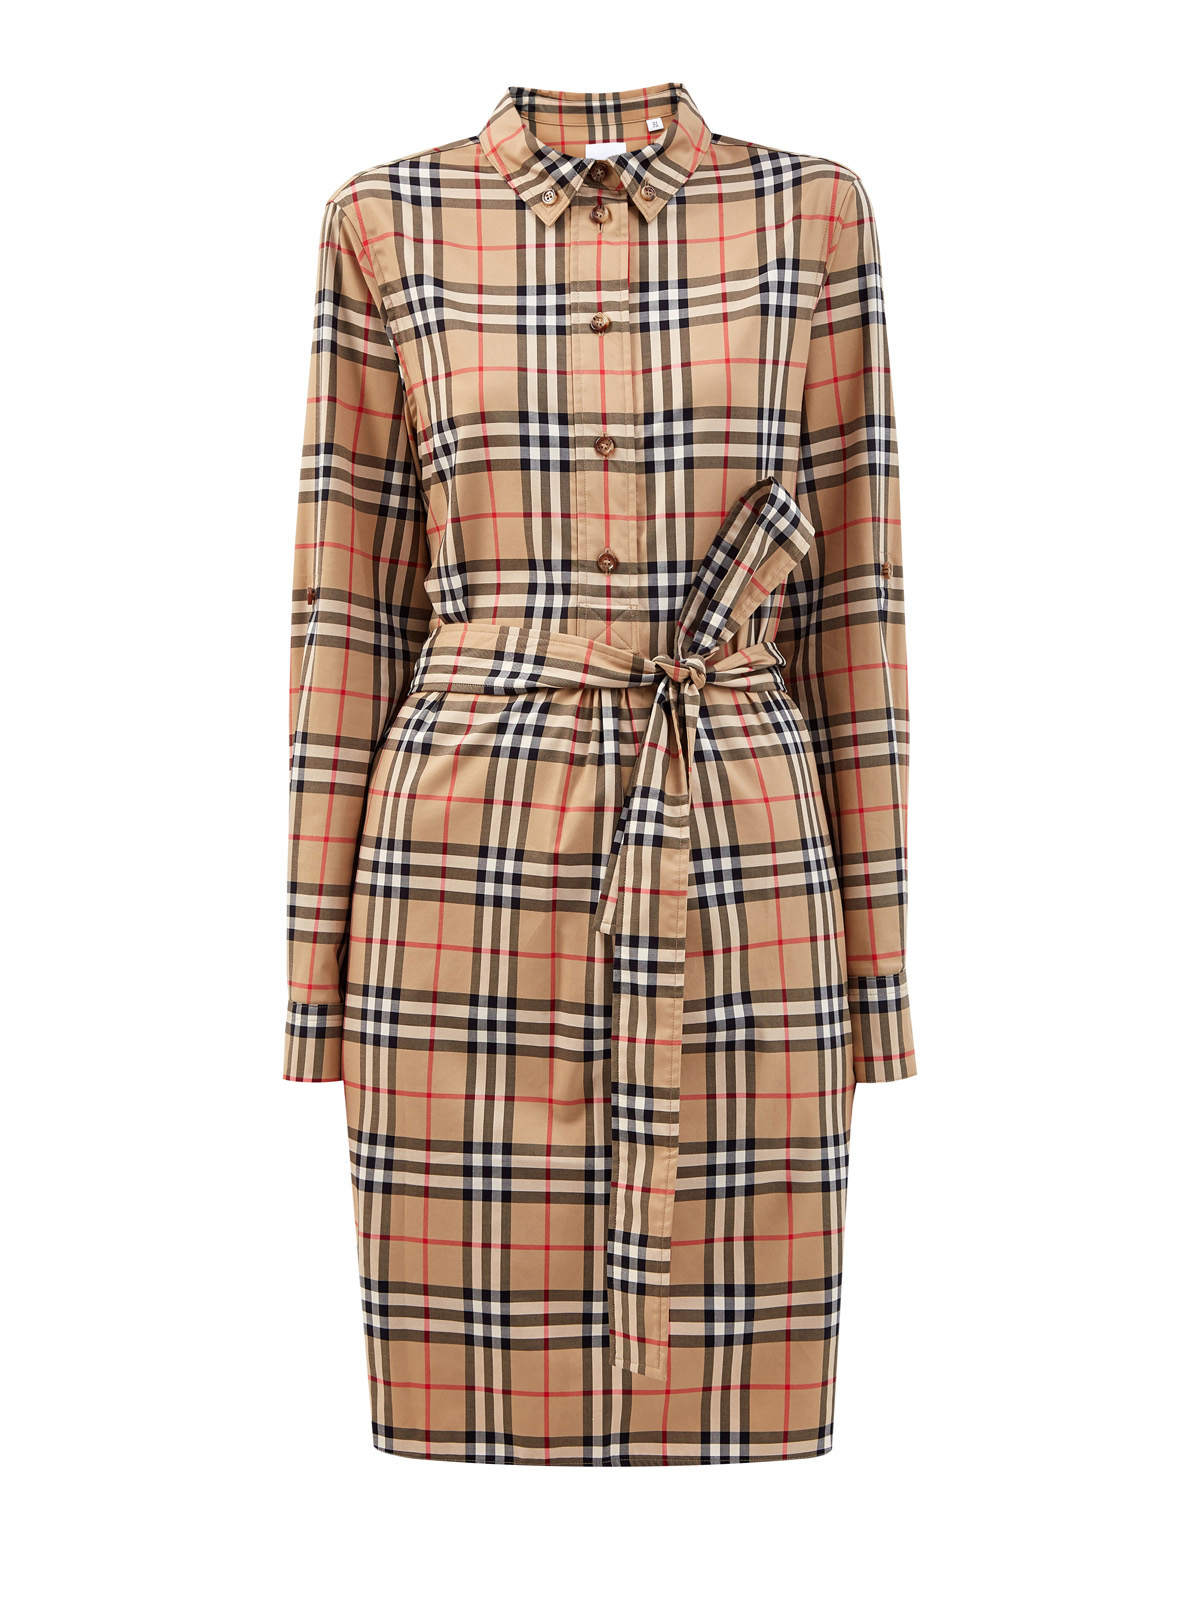 Приталенное платье-рубашка в клетку Vintage Check BURBERRY, цвет коричневый, размер S;L;XL - фото 1